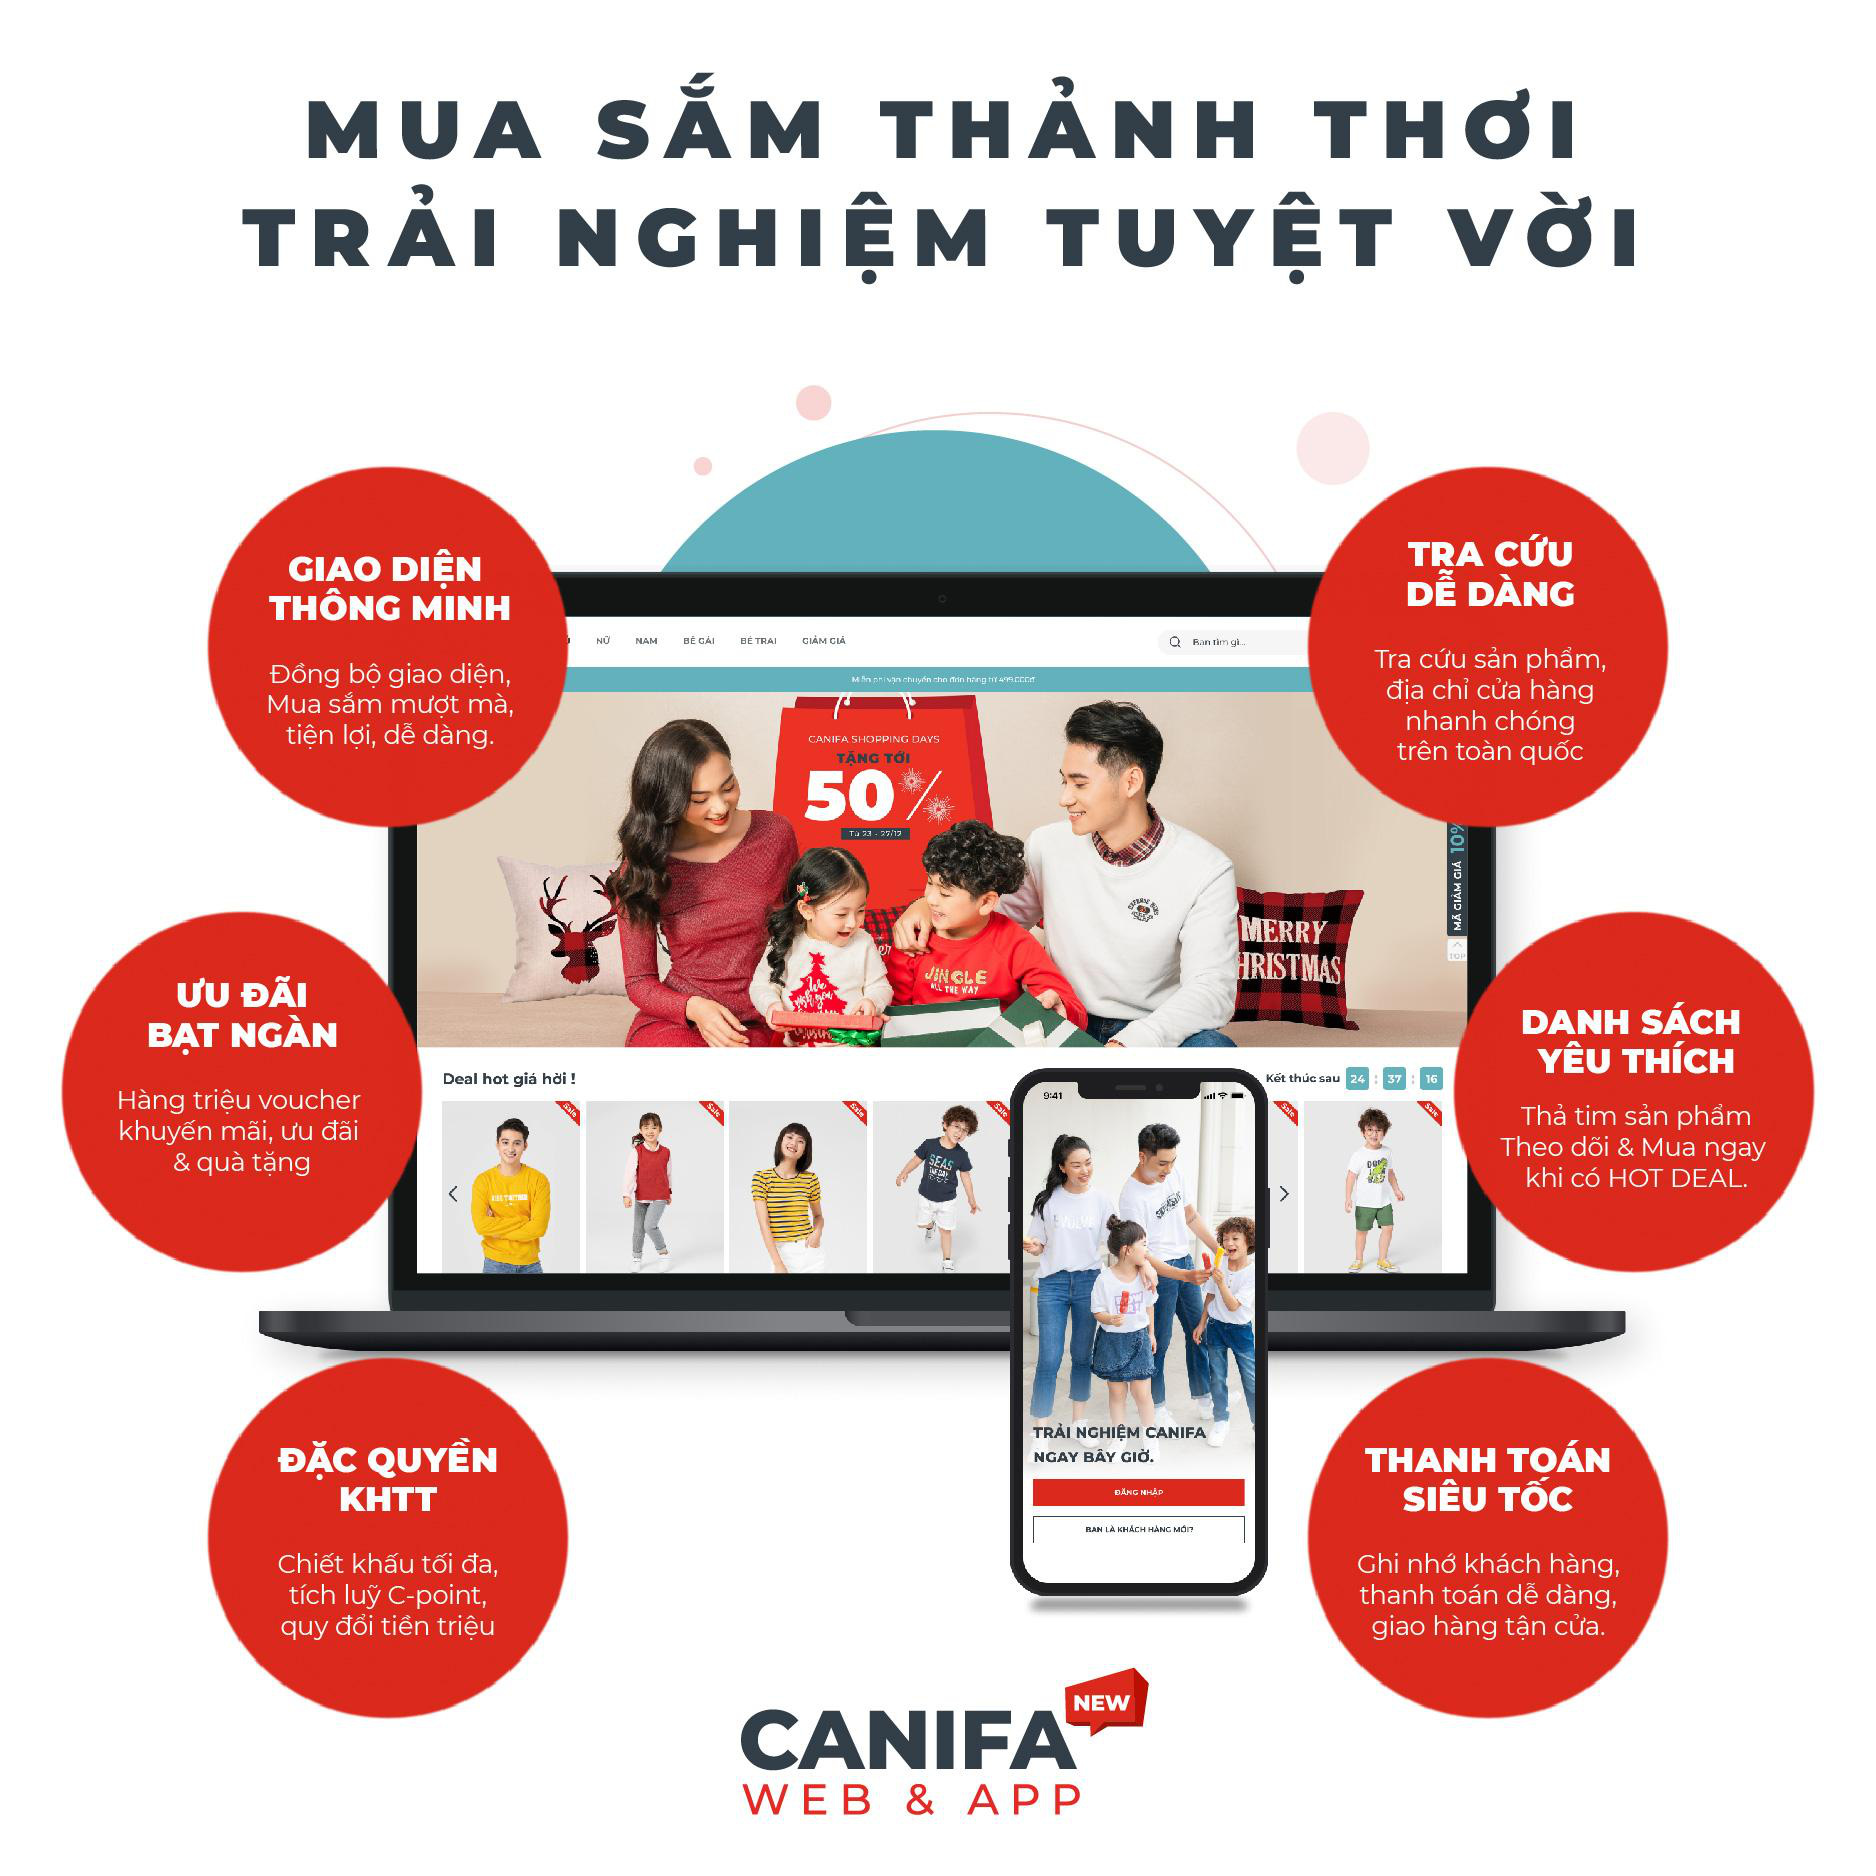 Canifa làm cách mạng với công nghệ mua sắm trực tuyến - Ảnh 1.